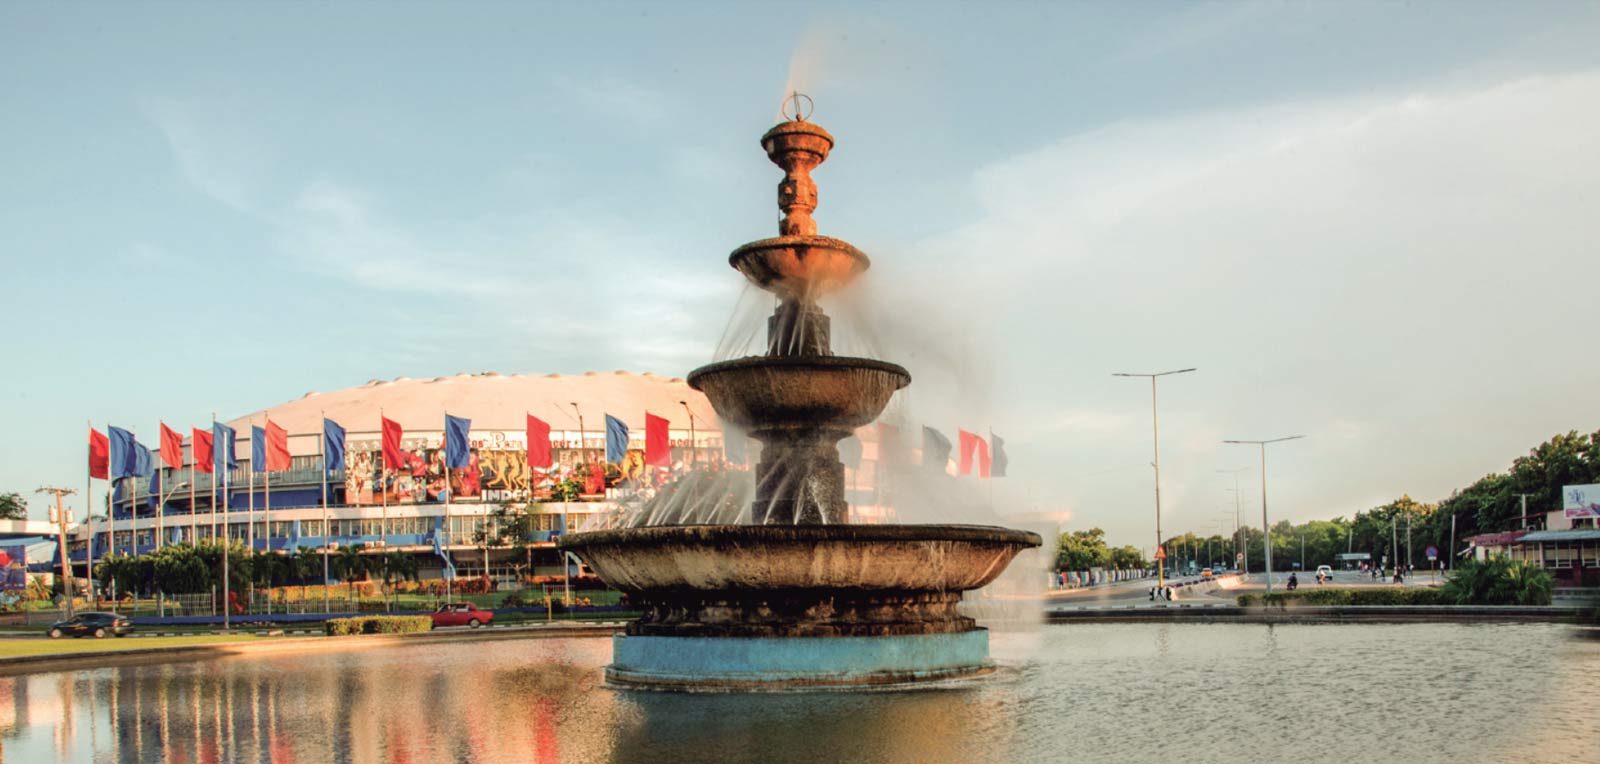 Paulina’s Bidet Fountain in Havana